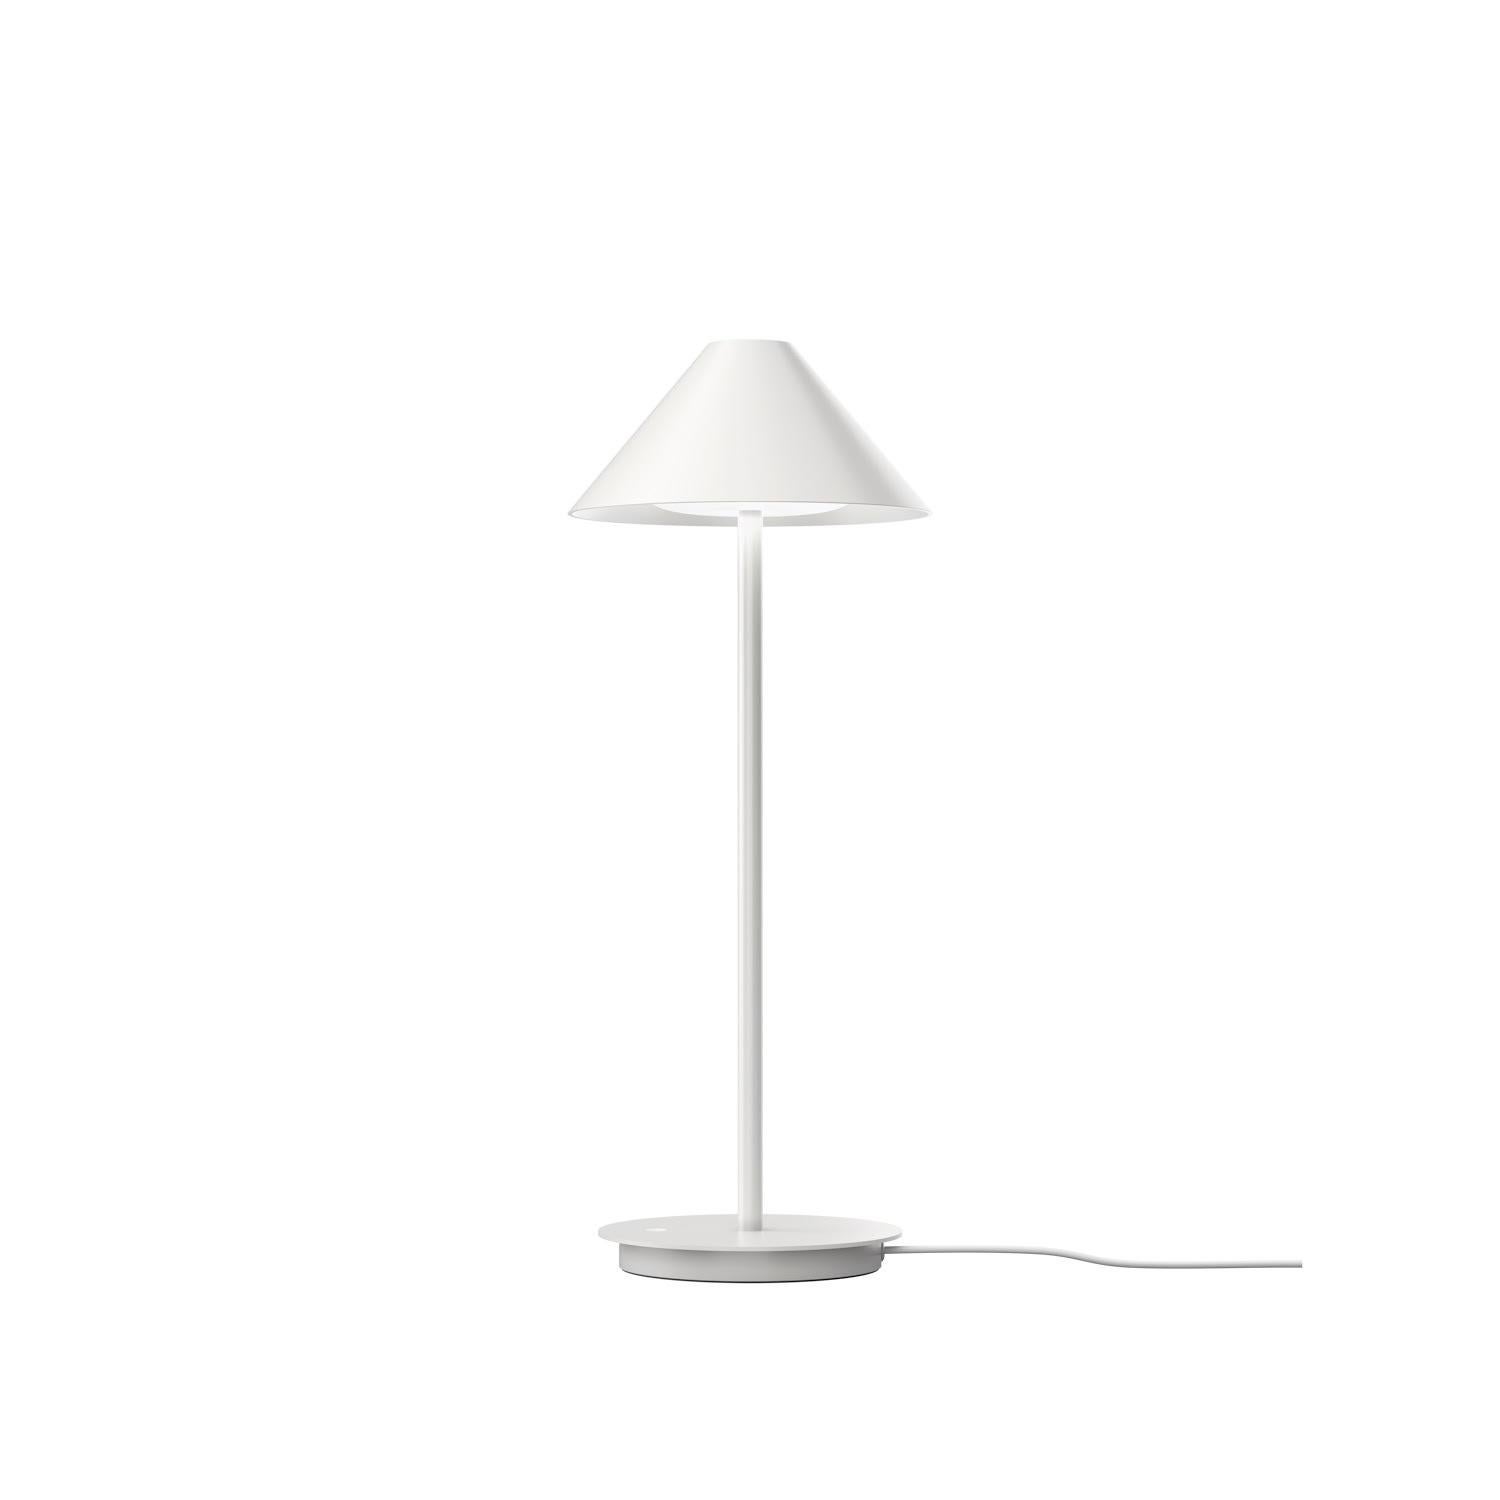 Lampe à poser Keglen de Louis Poulsen

Lampe de table BIGLI de Louis Poulsen, Design/One - Big Ideas.
Keglen est le résultat d'une collaboration entre BIG Ideas et Louis Poulsen en 2017. L'objectif était de créer une lampe simple et unique, axée sur